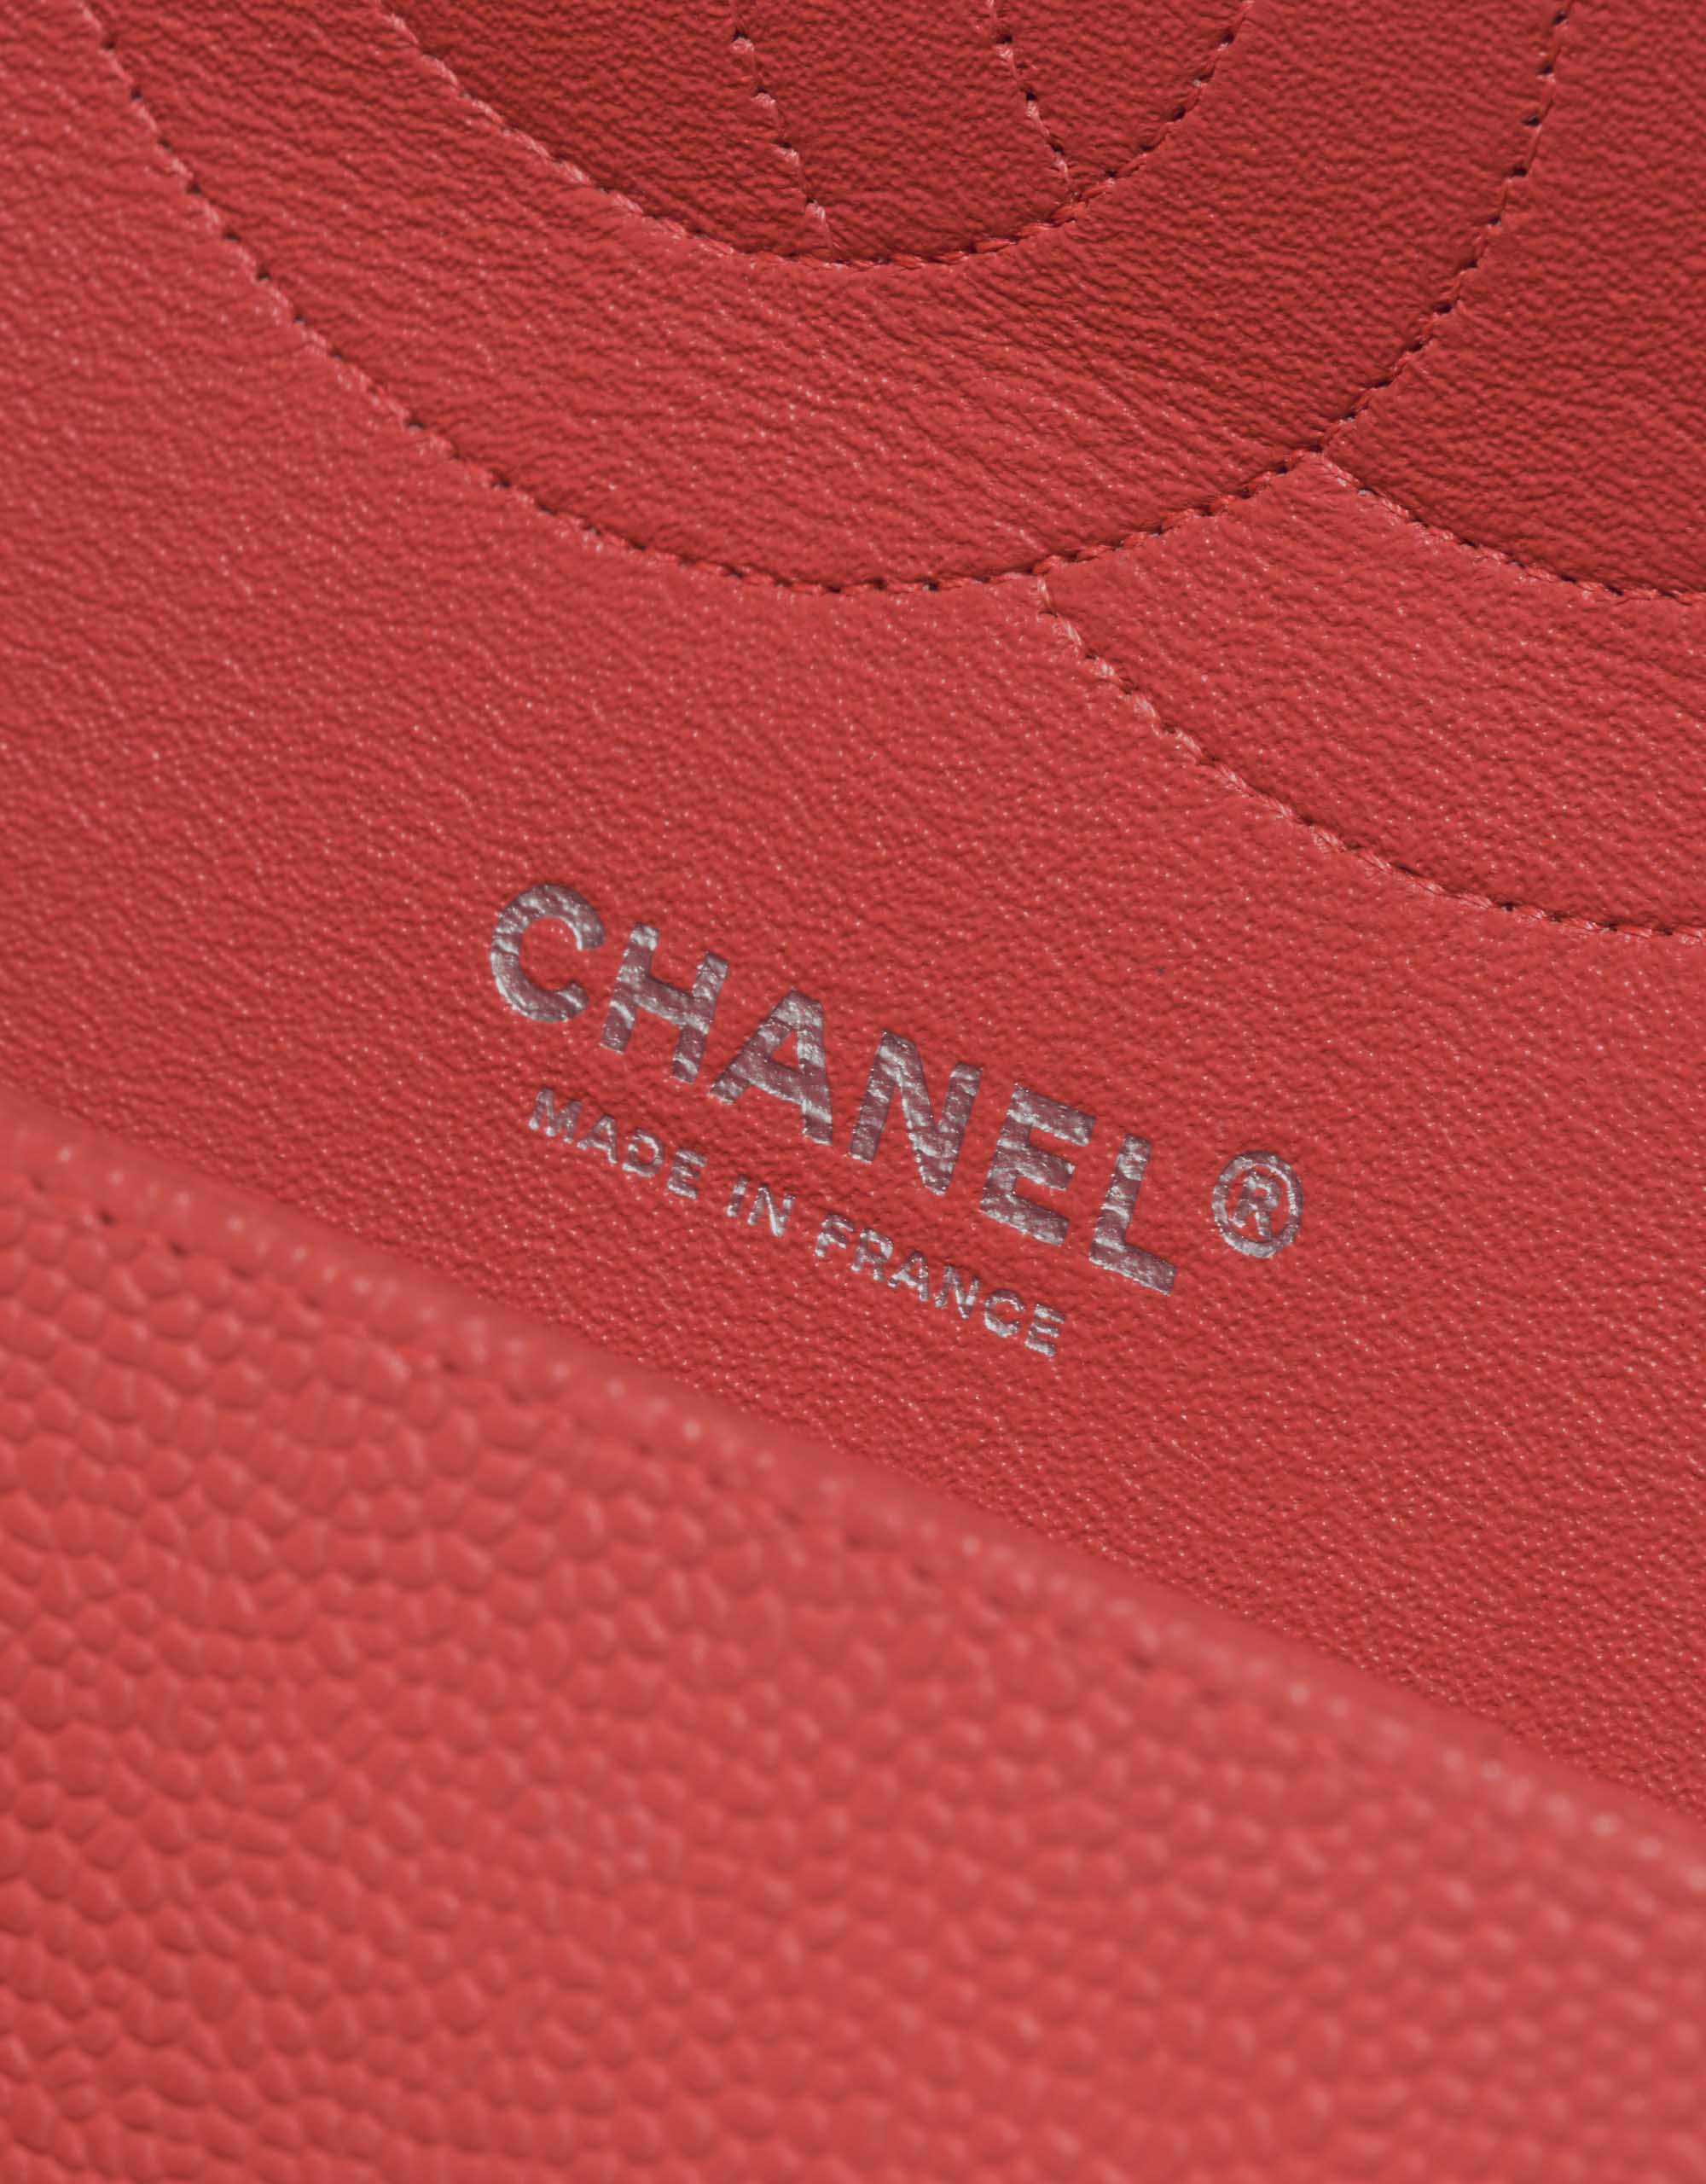 Sac Chanel d'occasion Classique Jumbo Caviar Corail Rose Logo | Vendez votre sac de créateur sur Saclab.com